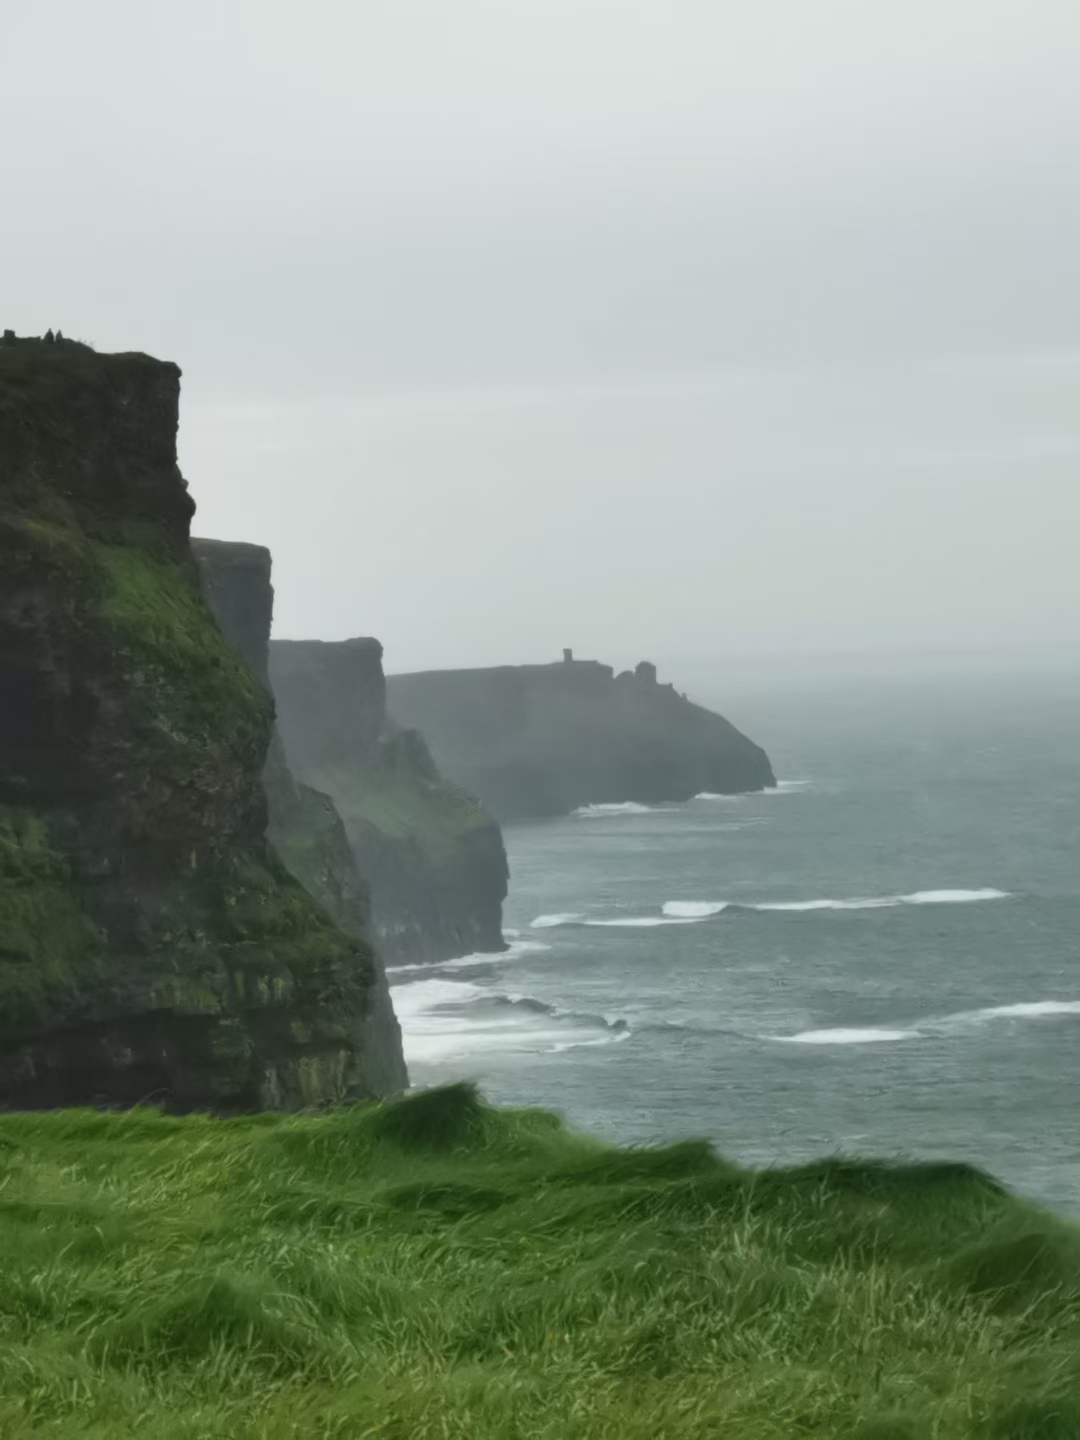 莫赫悬崖（CliffsofMoher），在爱尔兰岛中西部的边缘。悬崖面向浩瀚无际的大西洋，以奇险闻名